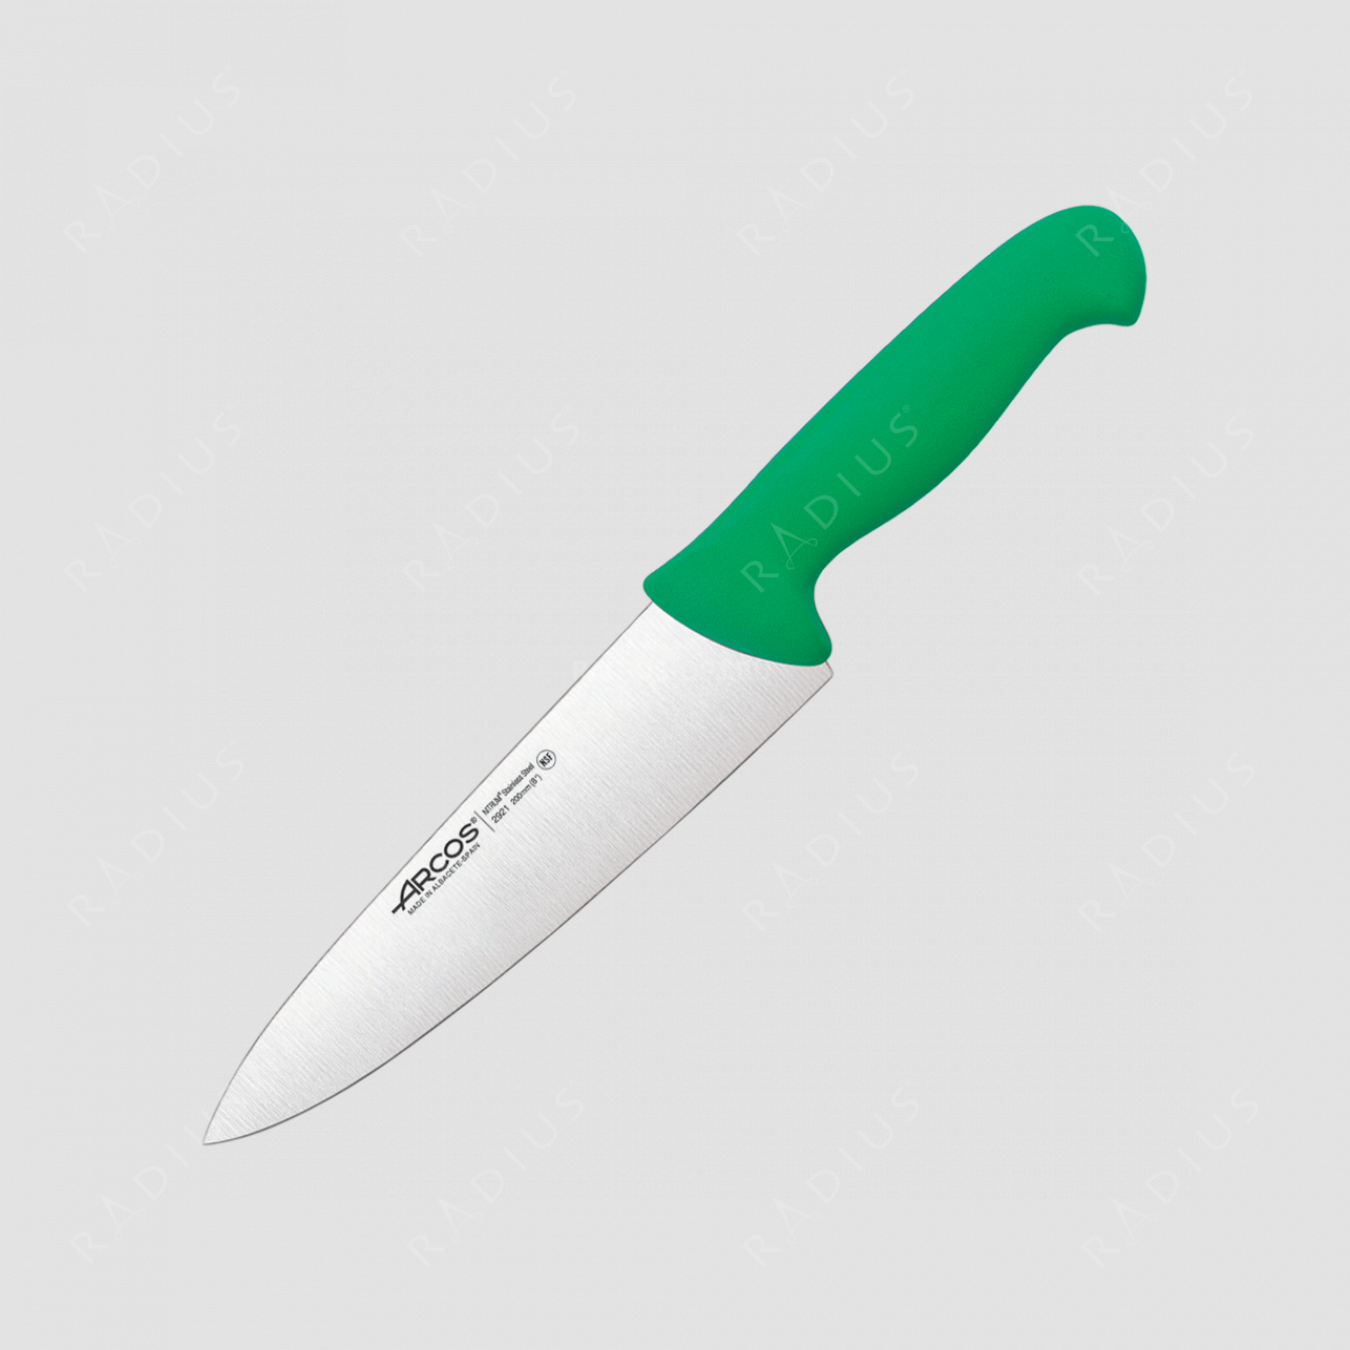 Профессиональный поварской кухонный нож 20 см, рукоять зеленая, серия 2900, ARCOS, Испания